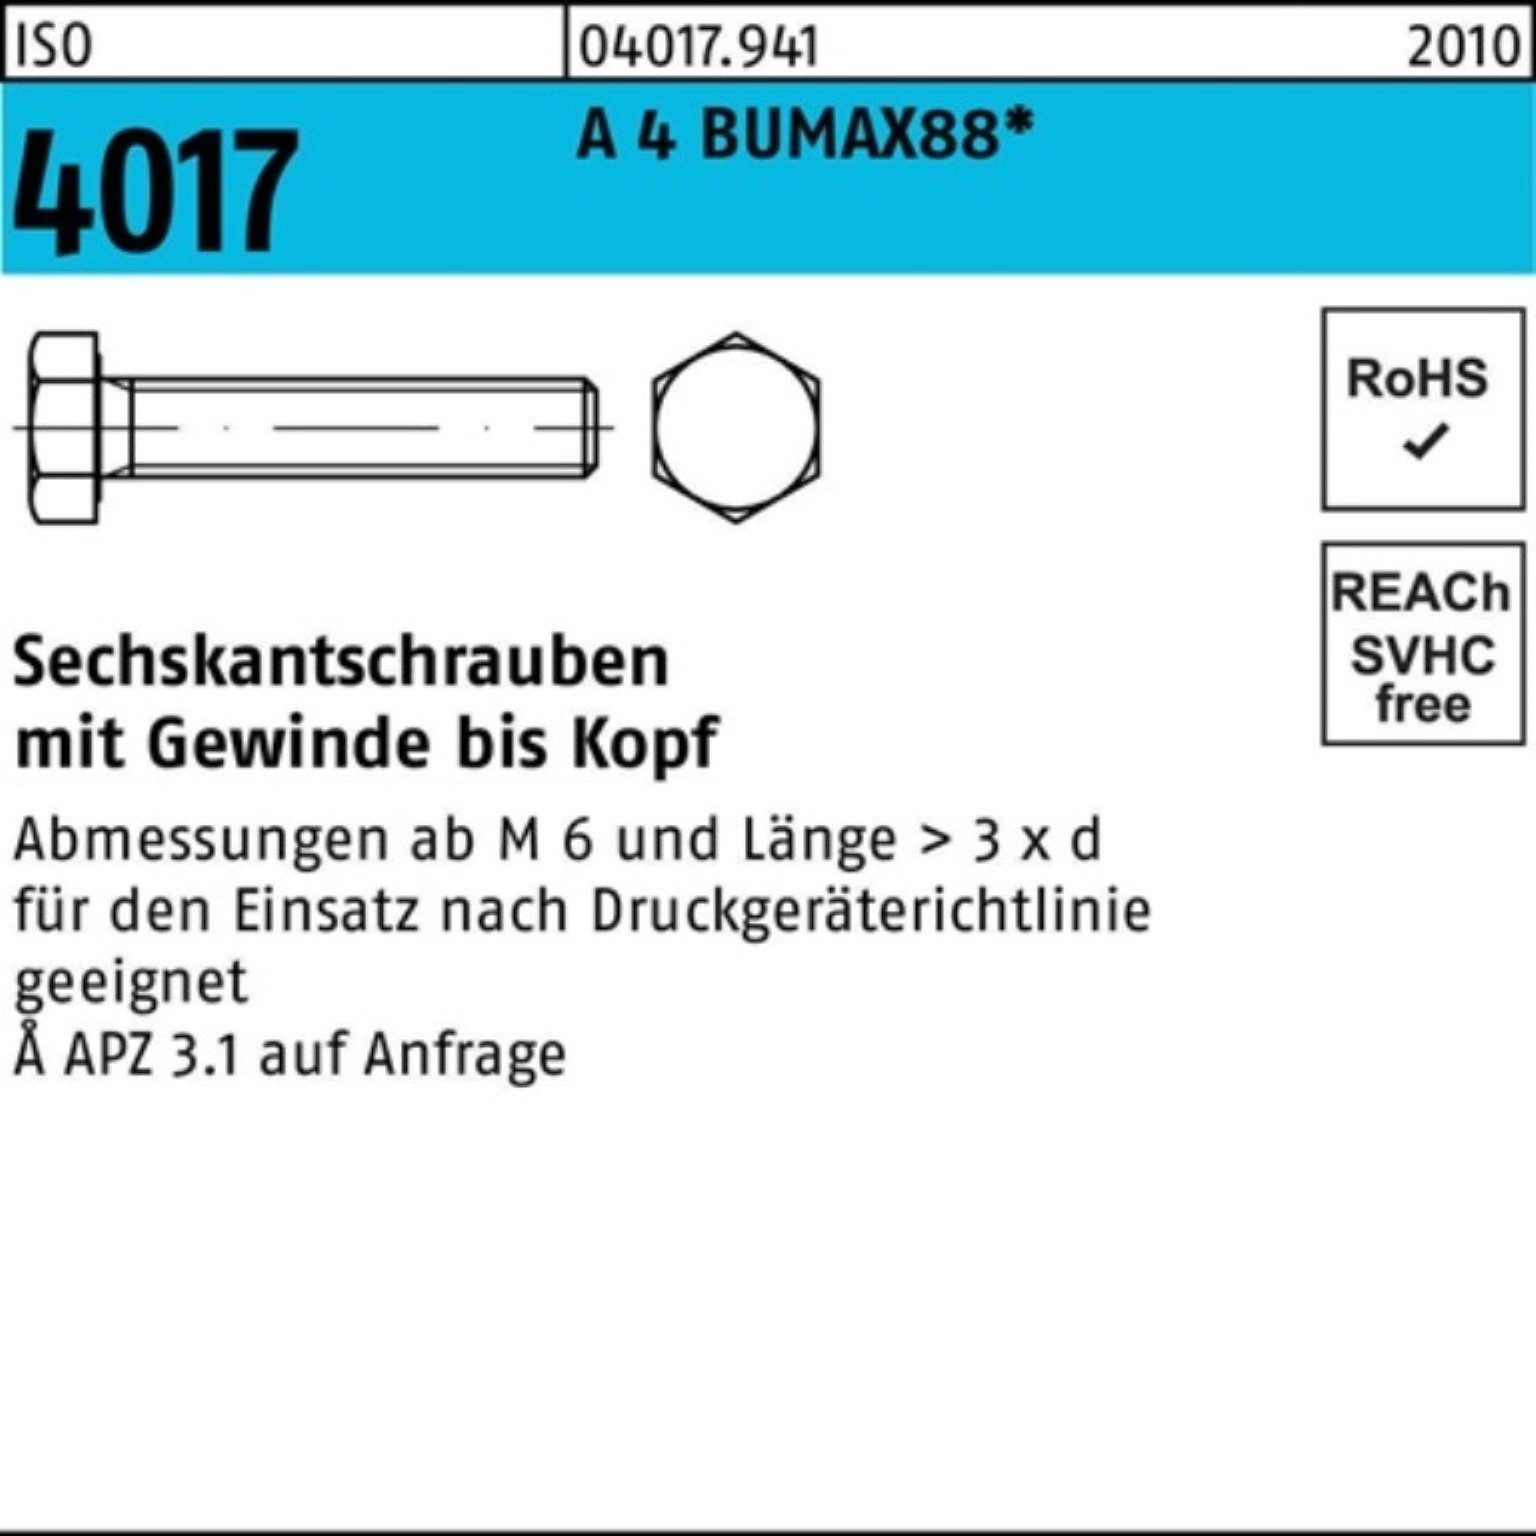 Bufab Sechskantschraube 100er Pack Sechskantschraube BUMAX88 4017 A VG 50 ISO M8x Stück 60 4